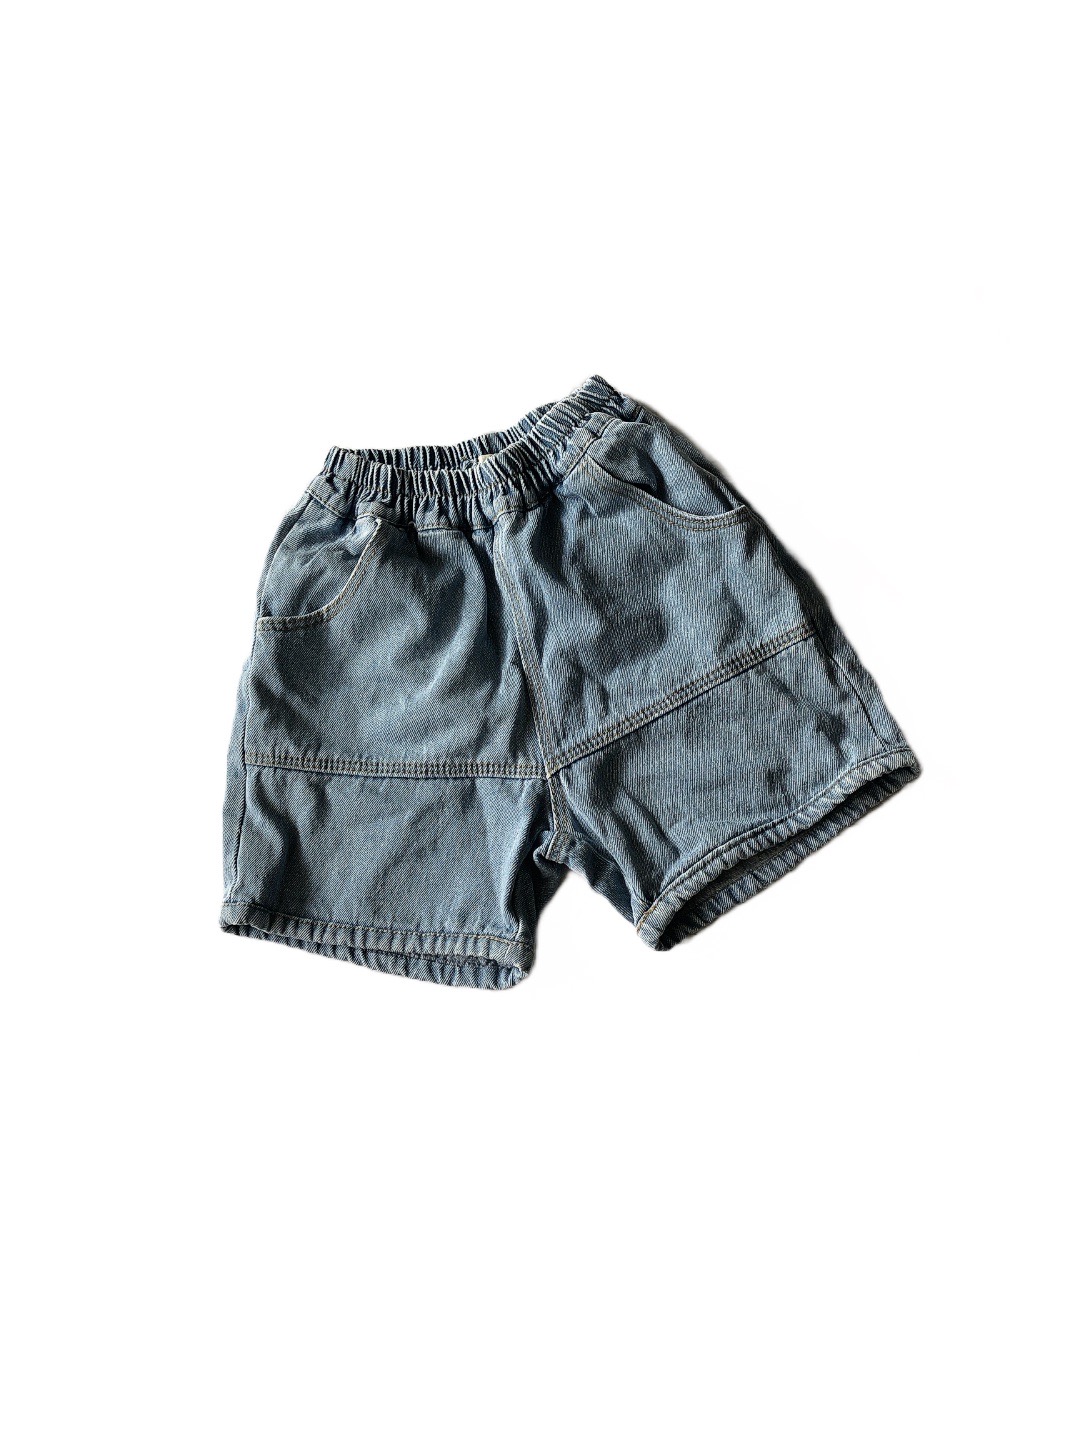 淺藍色牛仔女童短褲(130)
NT$69